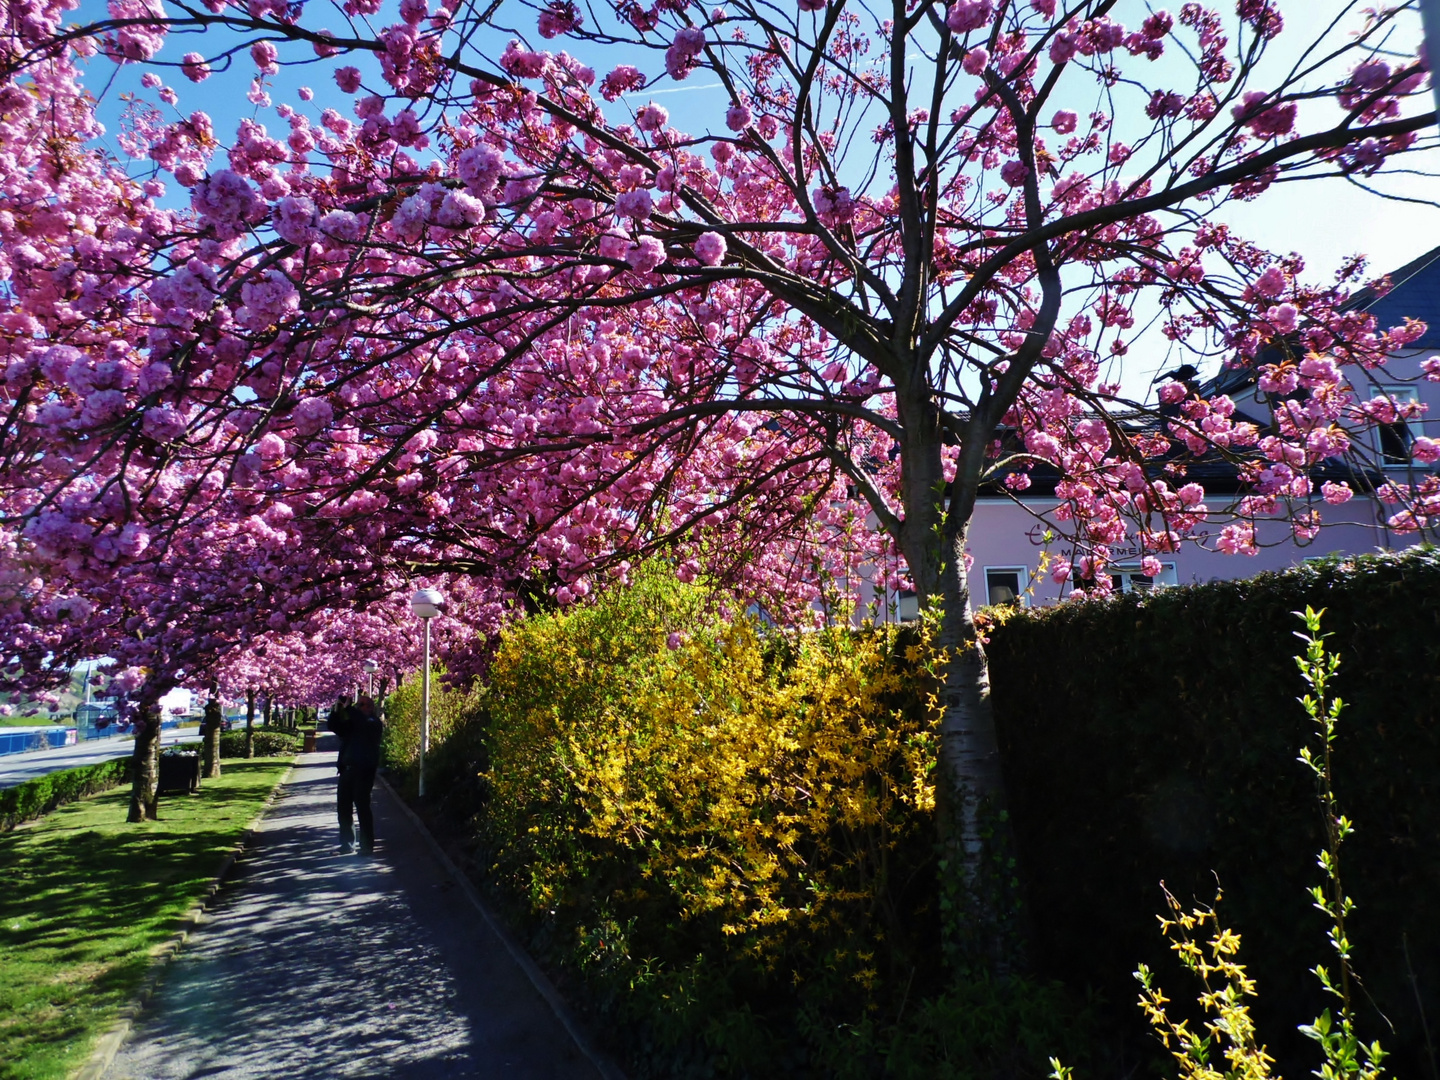 Japanische Kirschblütenallee in Remagen-Oberwinter